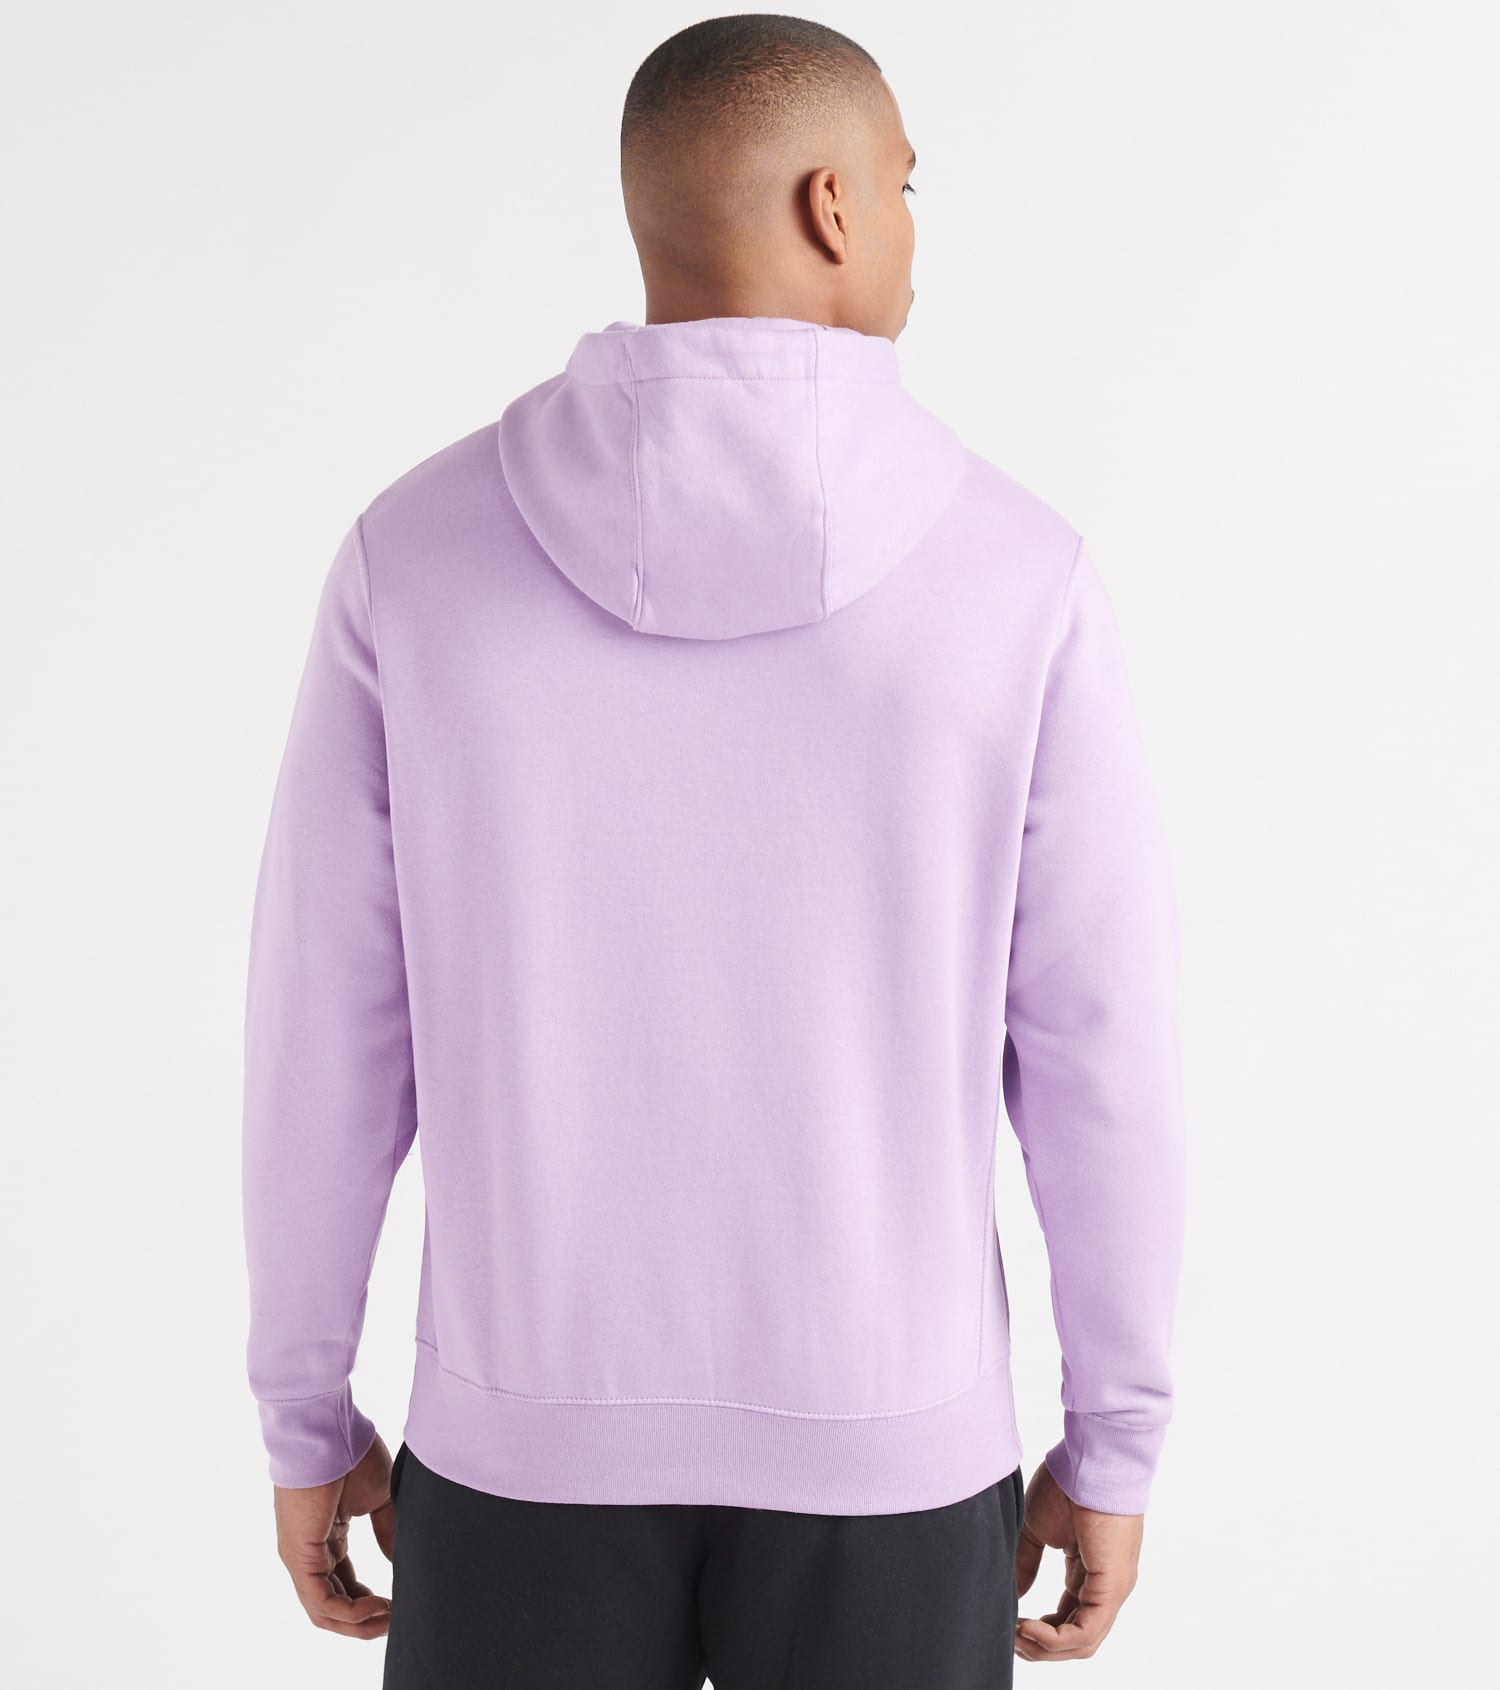 nike lavender hoodie